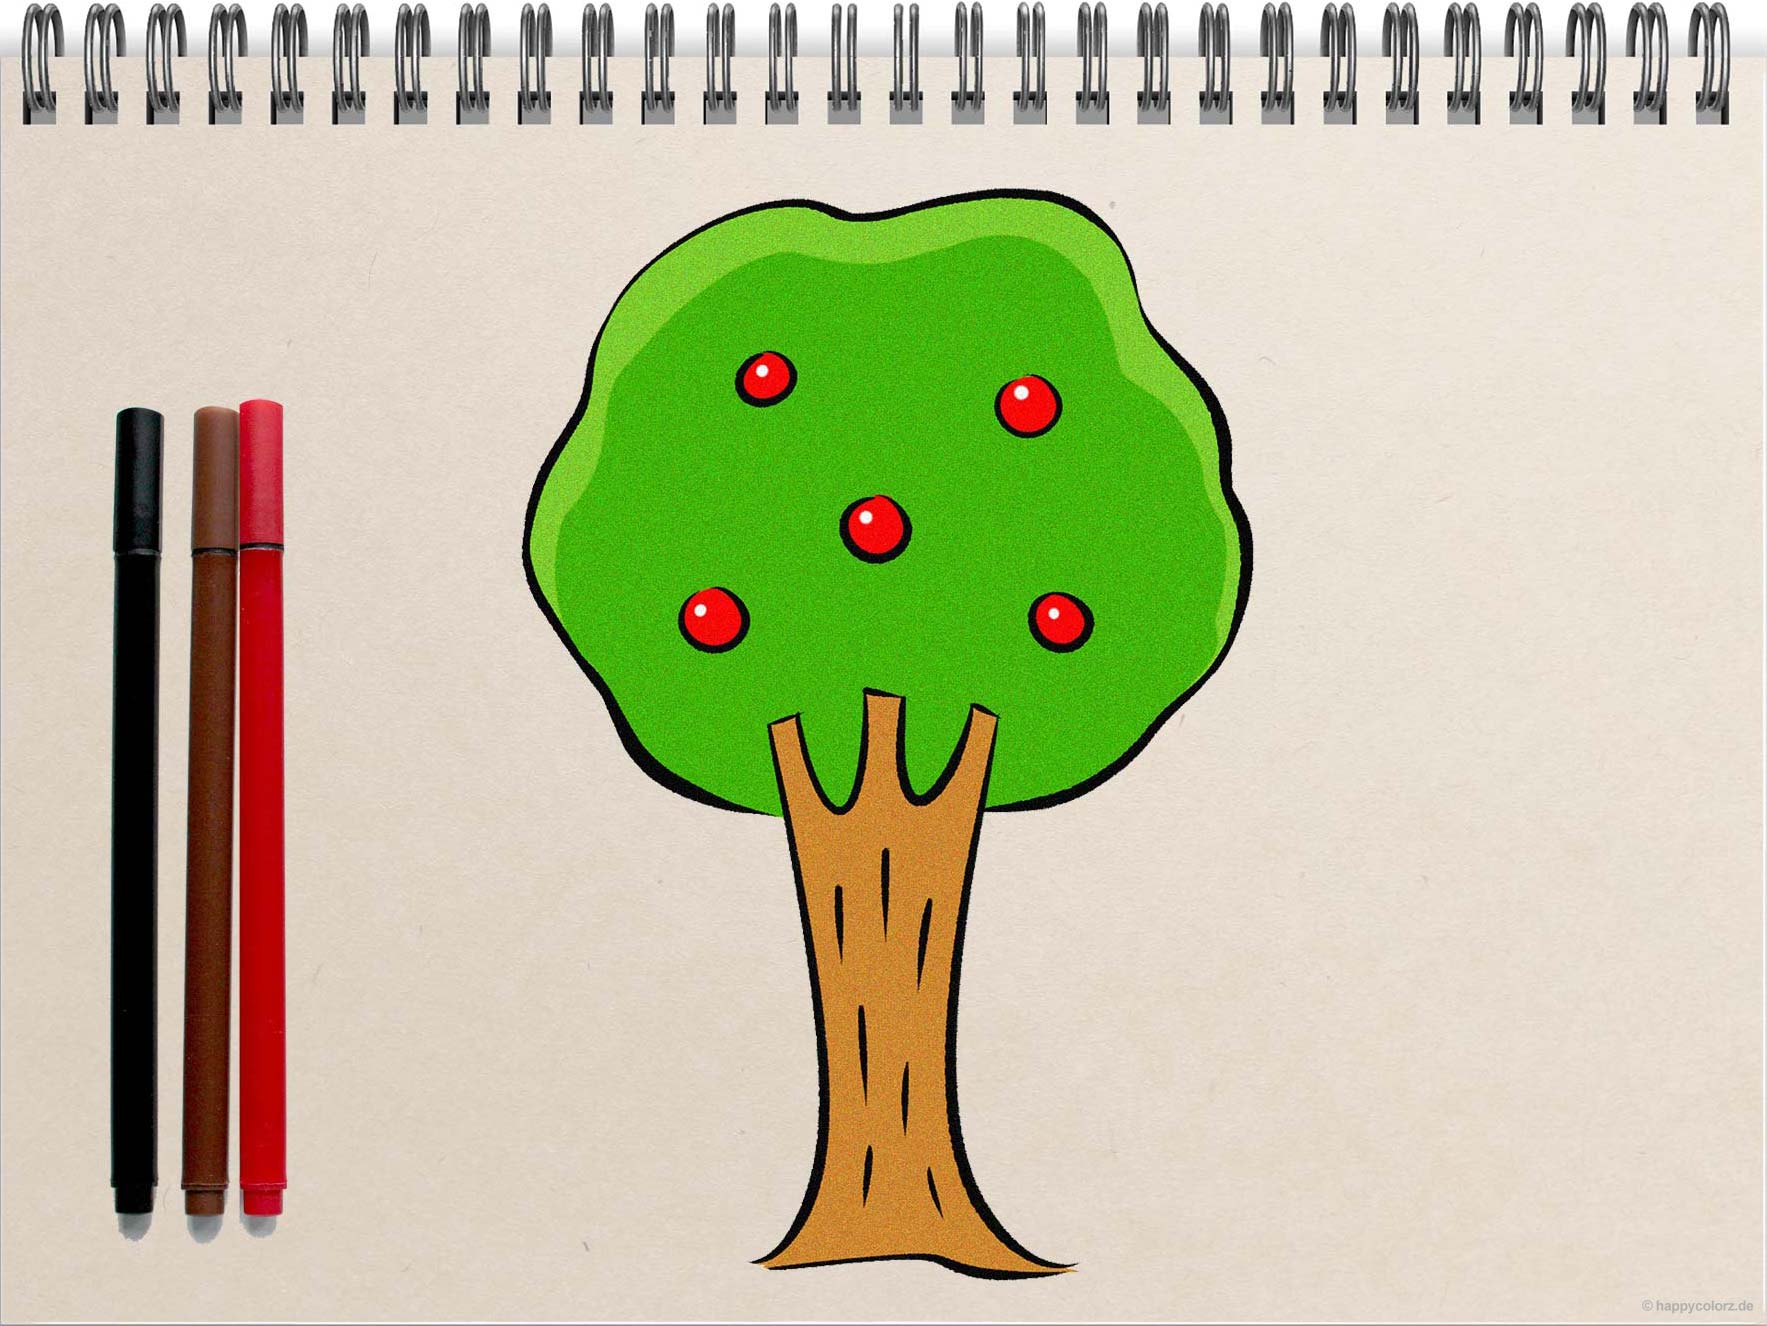 Einfachen Baum malen - Schritt-für-Schritt Anleitung mit Vorlagen